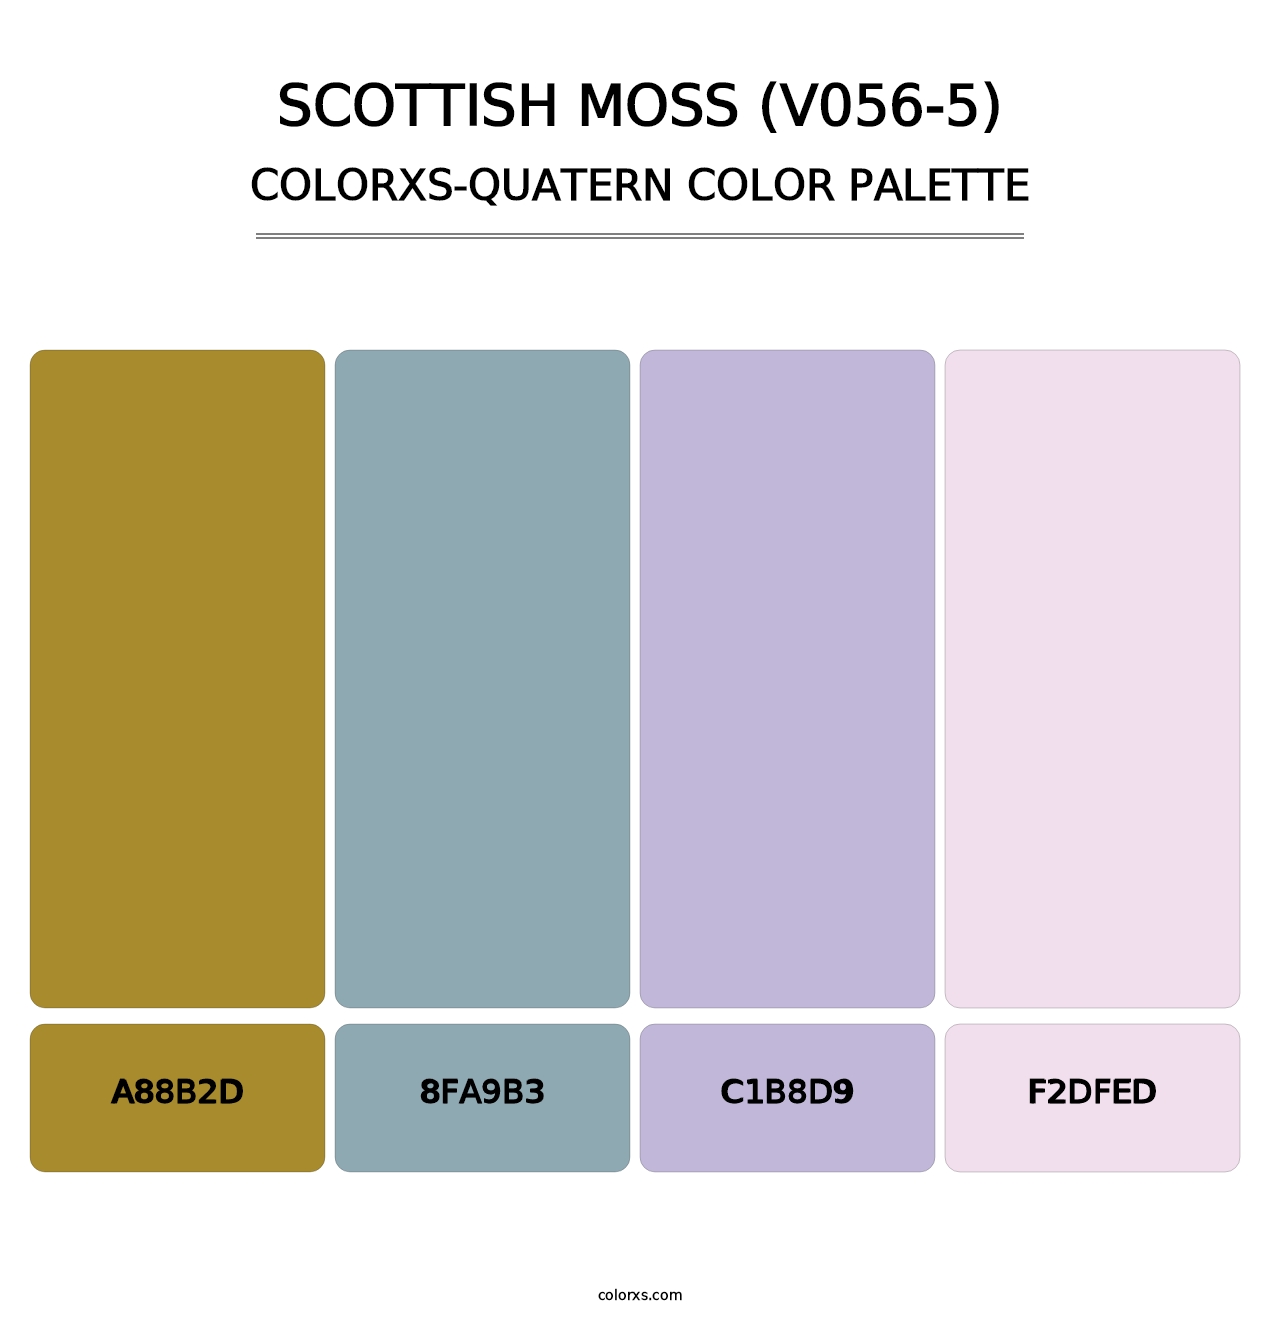 Scottish Moss (V056-5) - Colorxs Quatern Palette